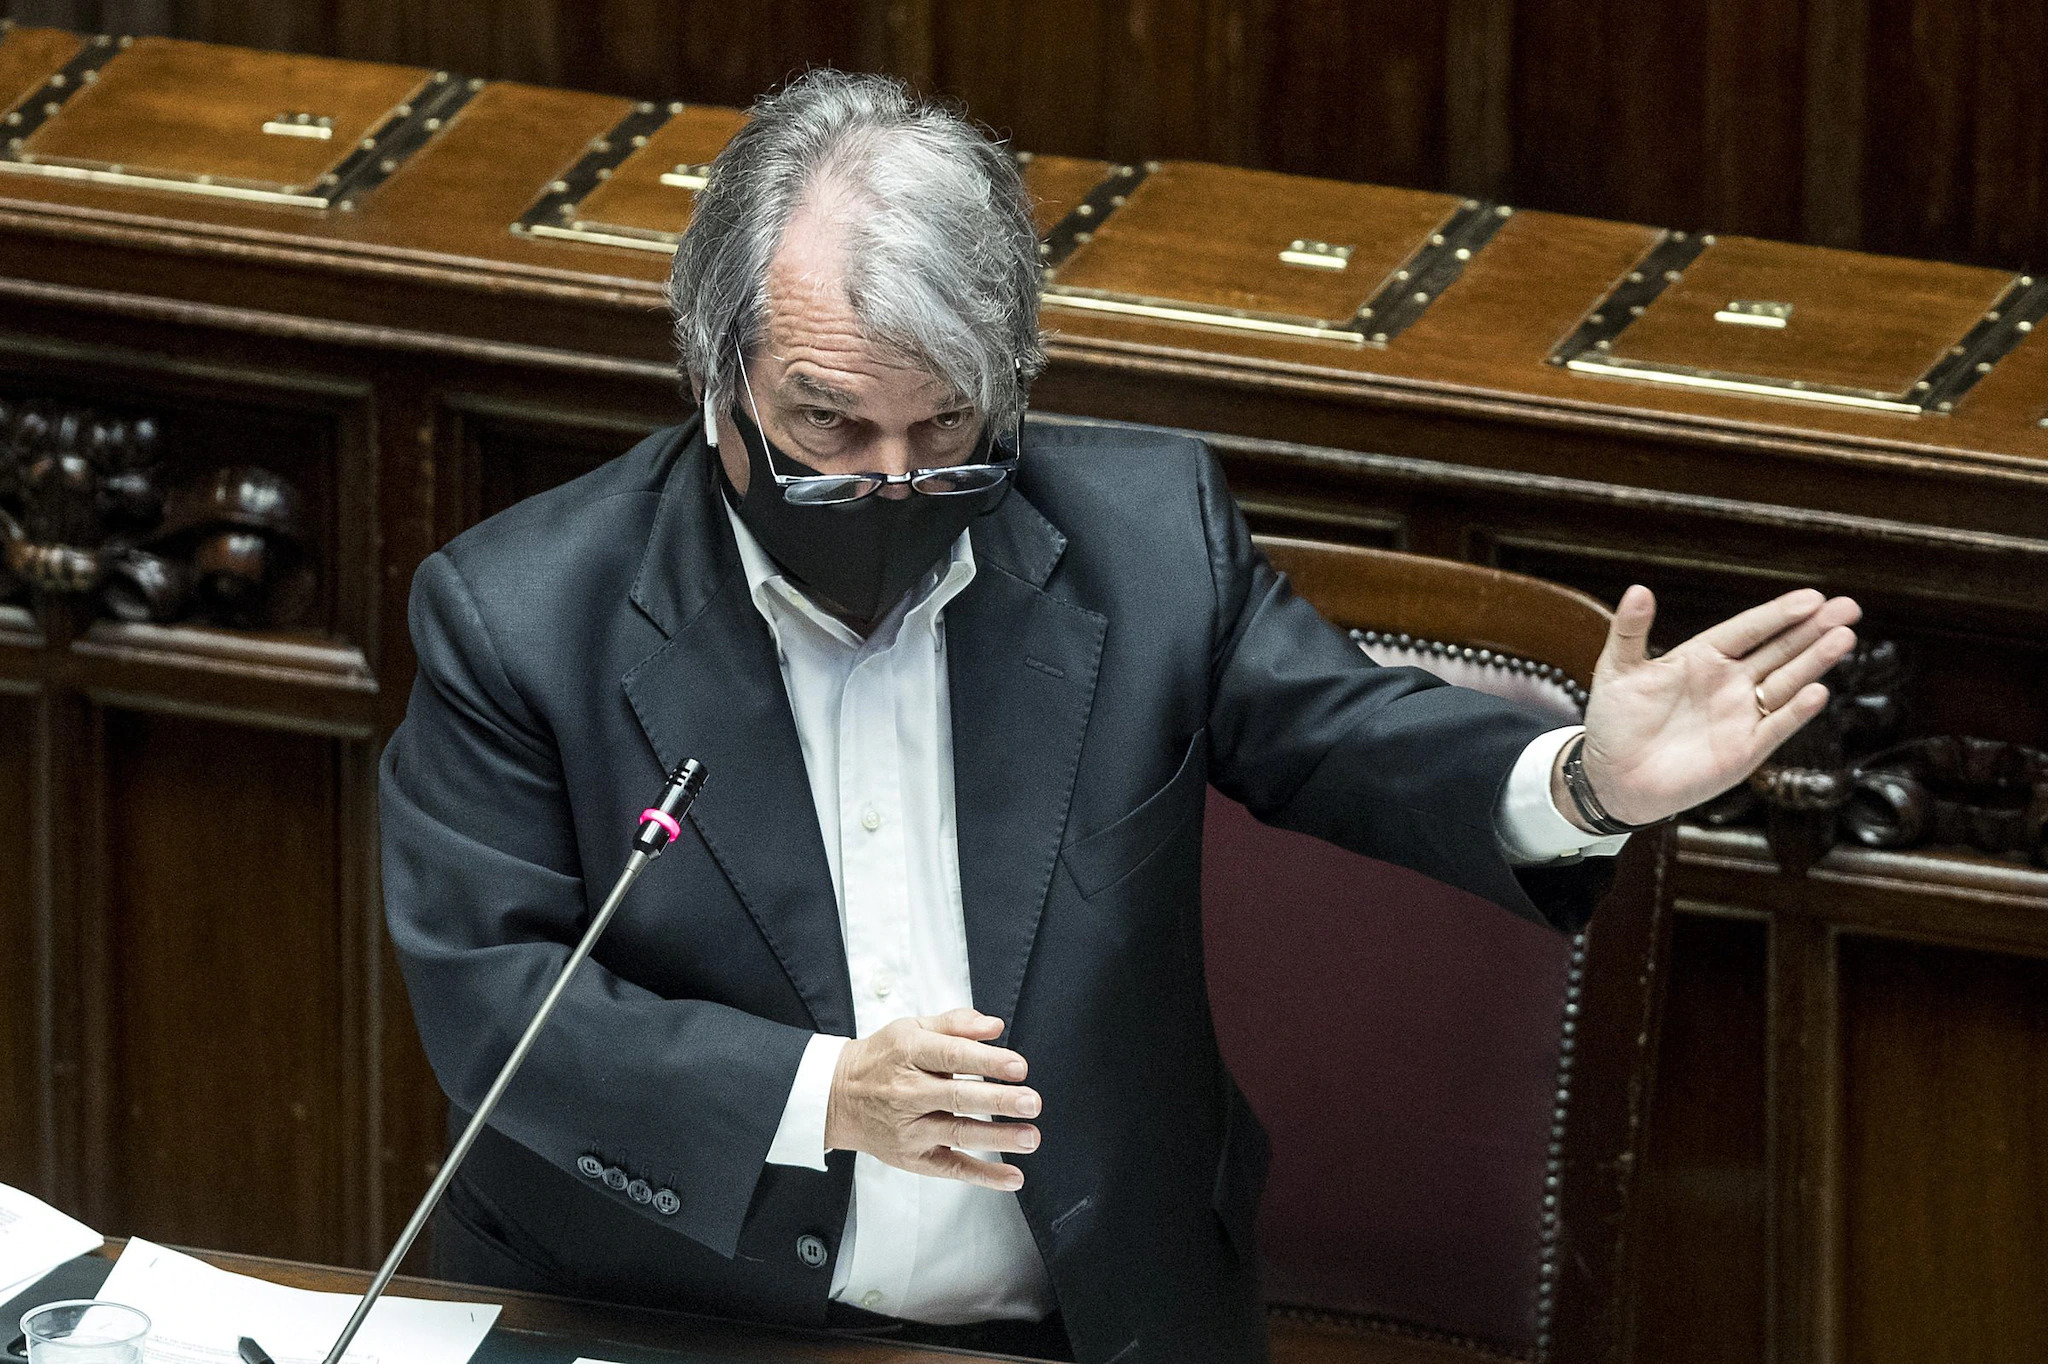 Mascherine : nuove indicazioni da parte del ministro Brunetta